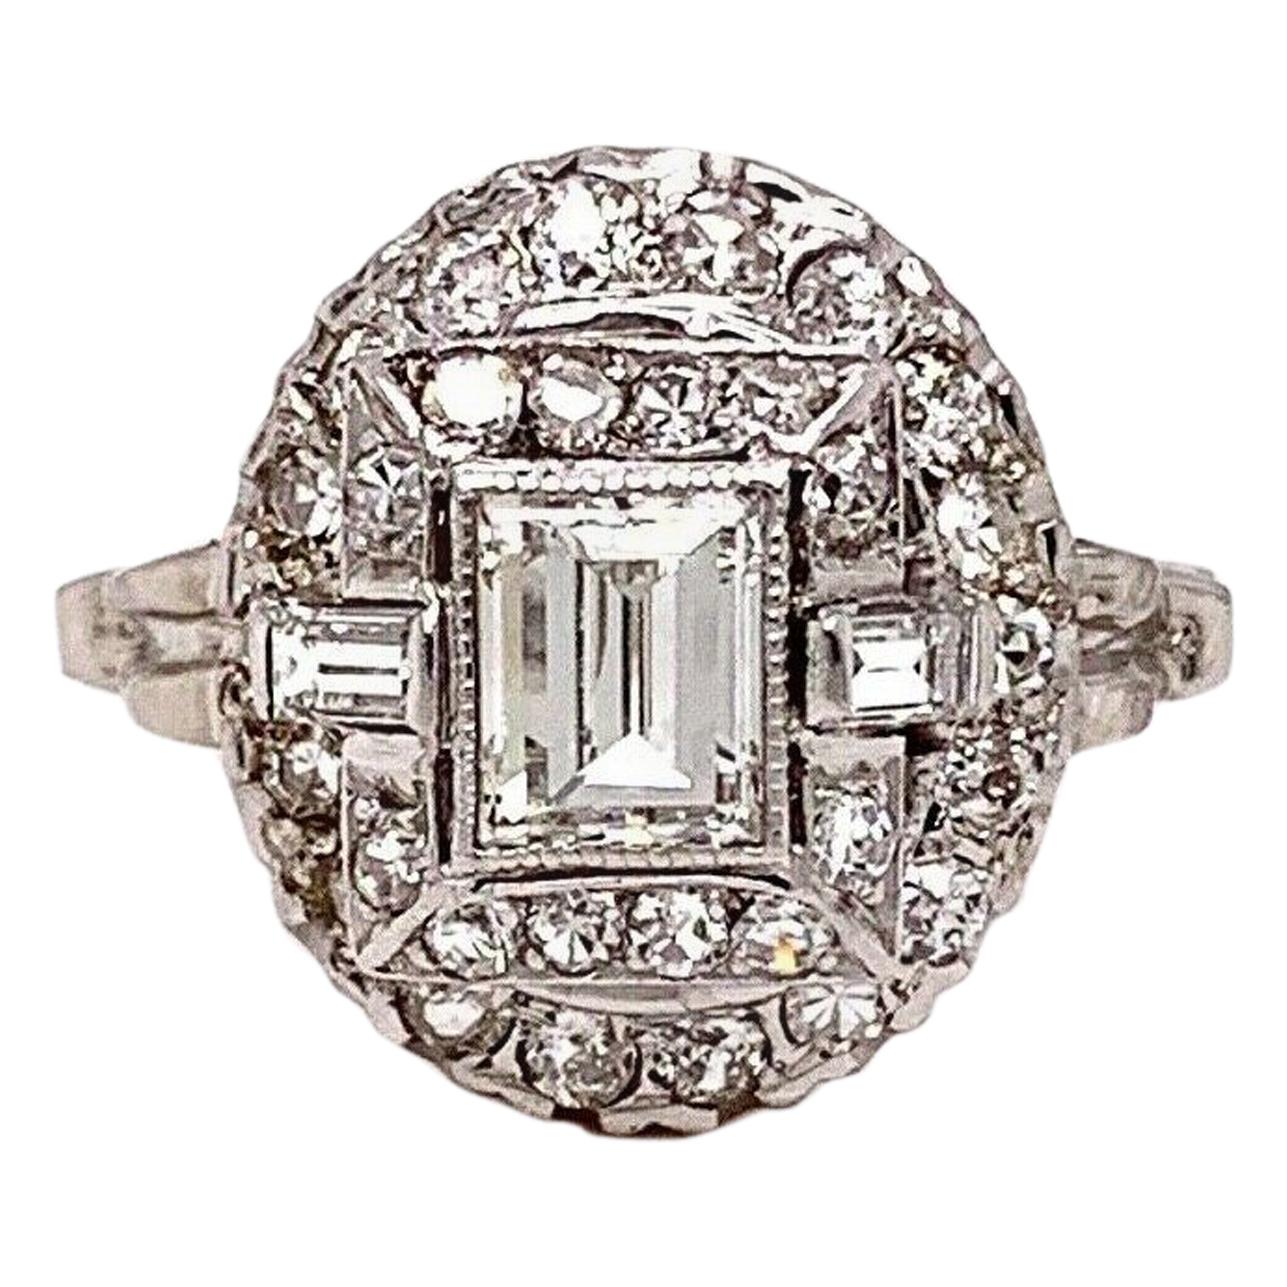 Antique Edwardian Era Diamond Ring 1.45 Carat G VS in 14 Karat White Gold